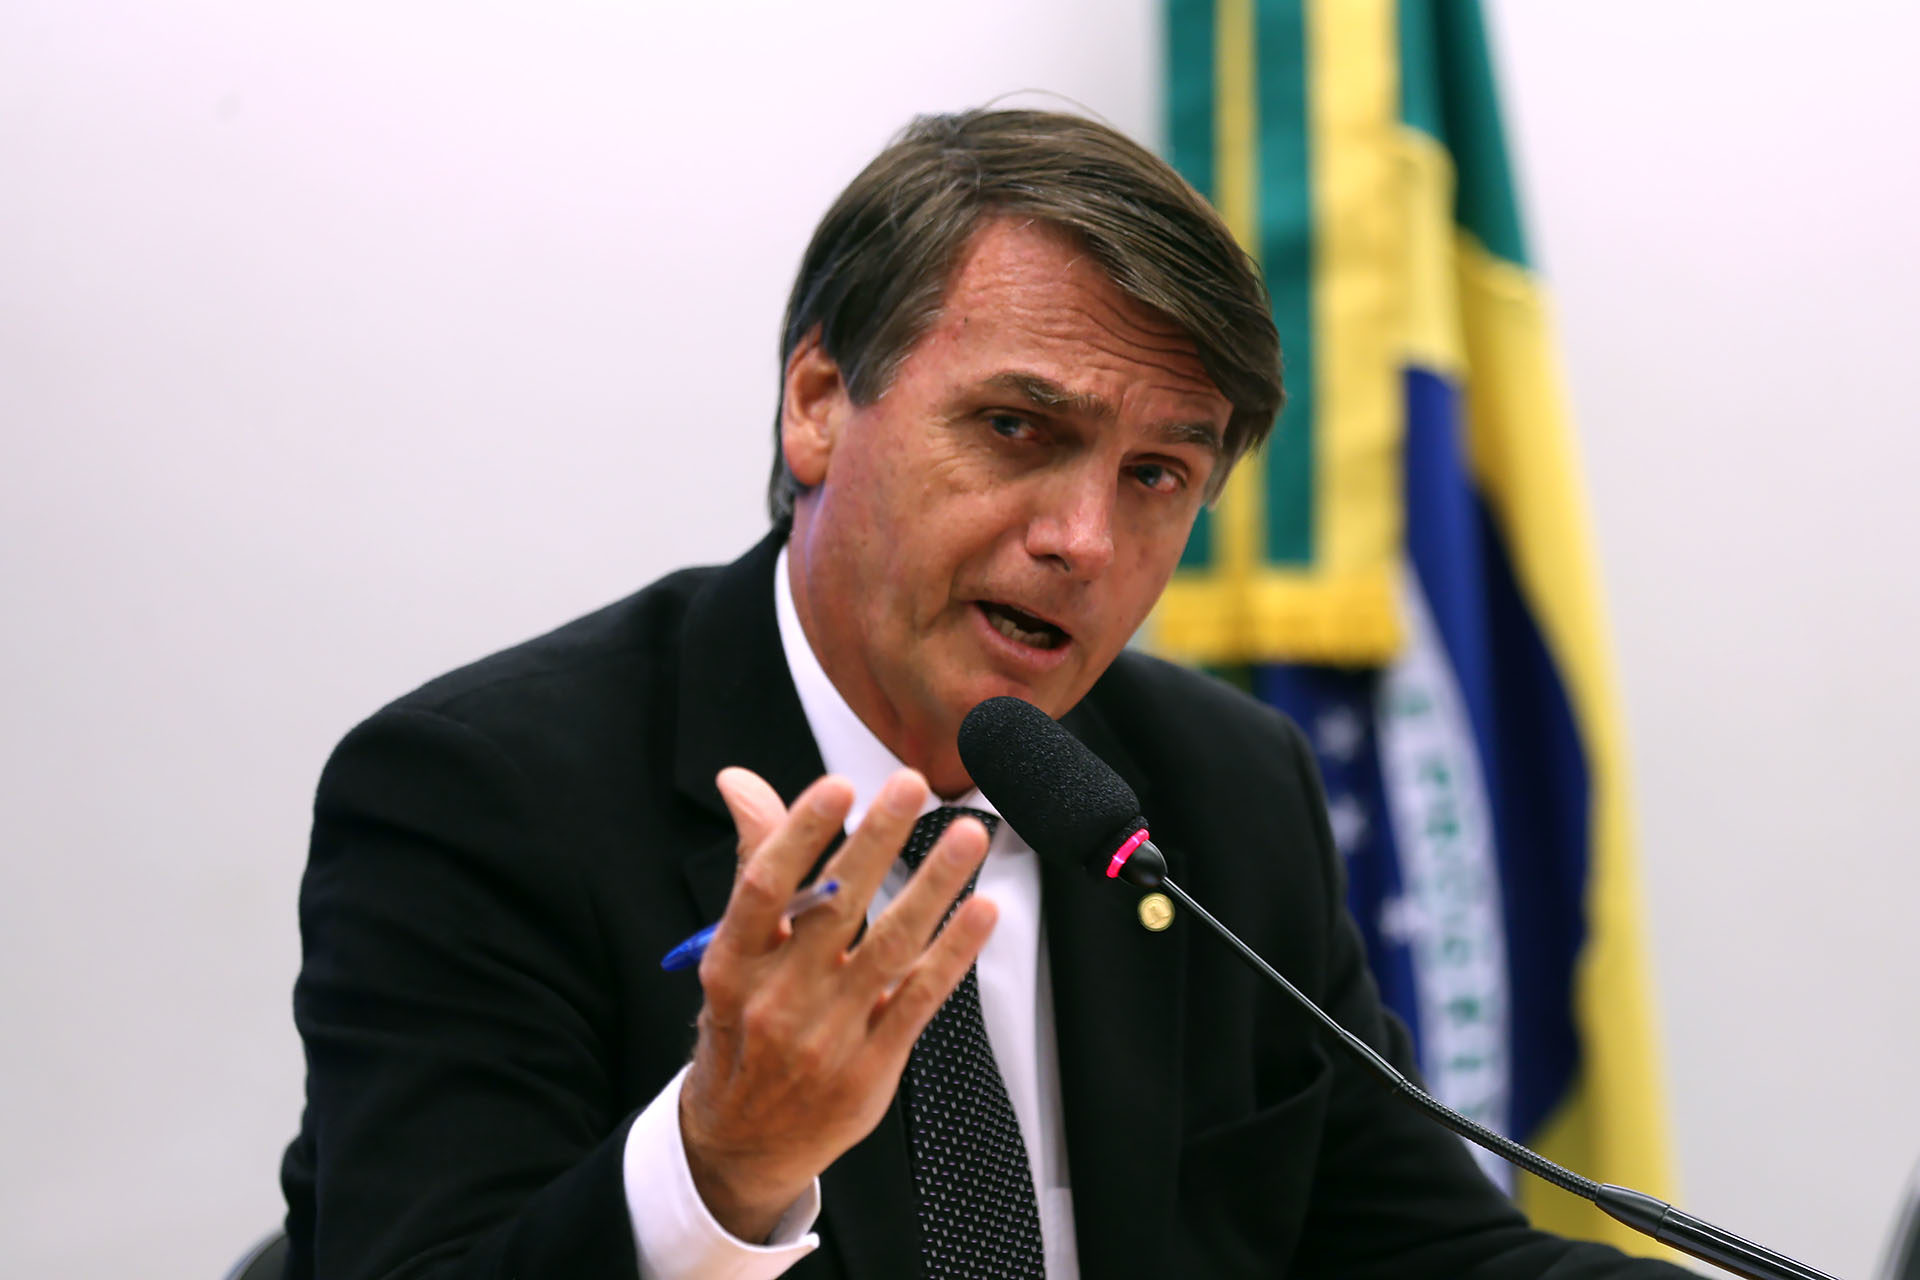 Jair Bolsonaro, du Parti social libéral, est soutenu par des responsables de mouvements évangéliques (Photo: Wikimedia commons/F. Rodrigues/CC BY 2.0)